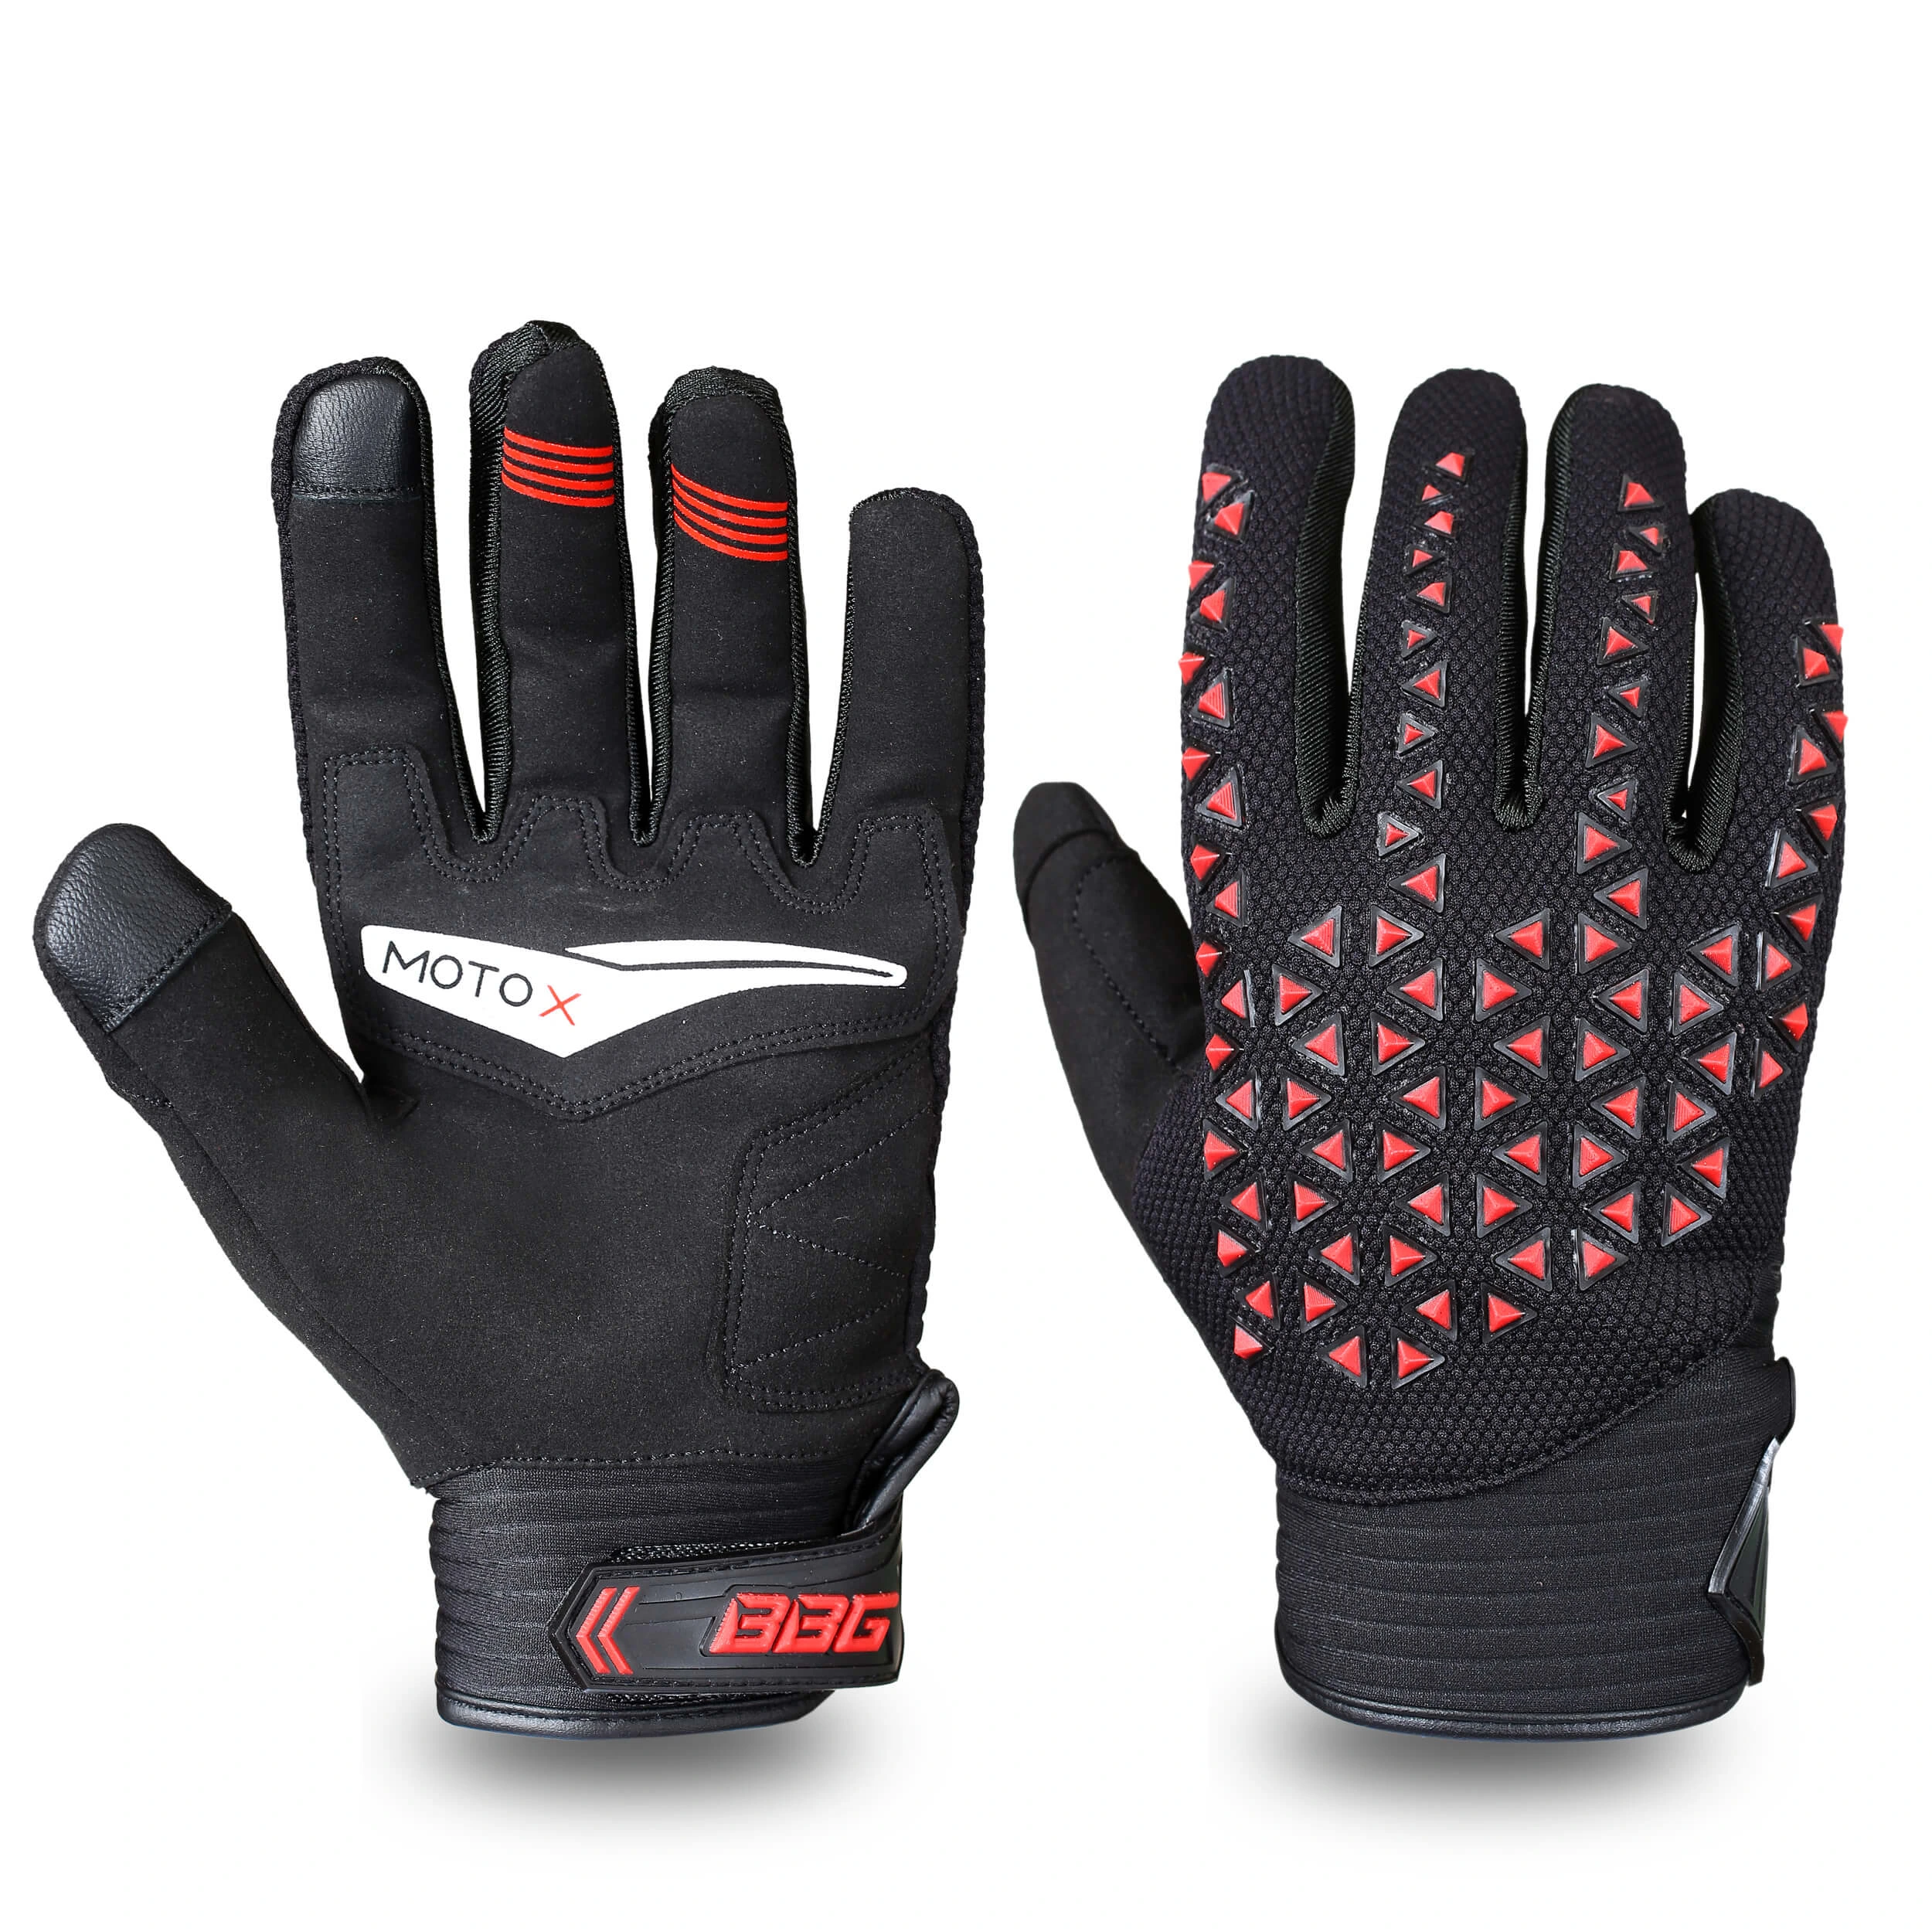 BBG Motocross Black Red Riding Gloves Buy online in India